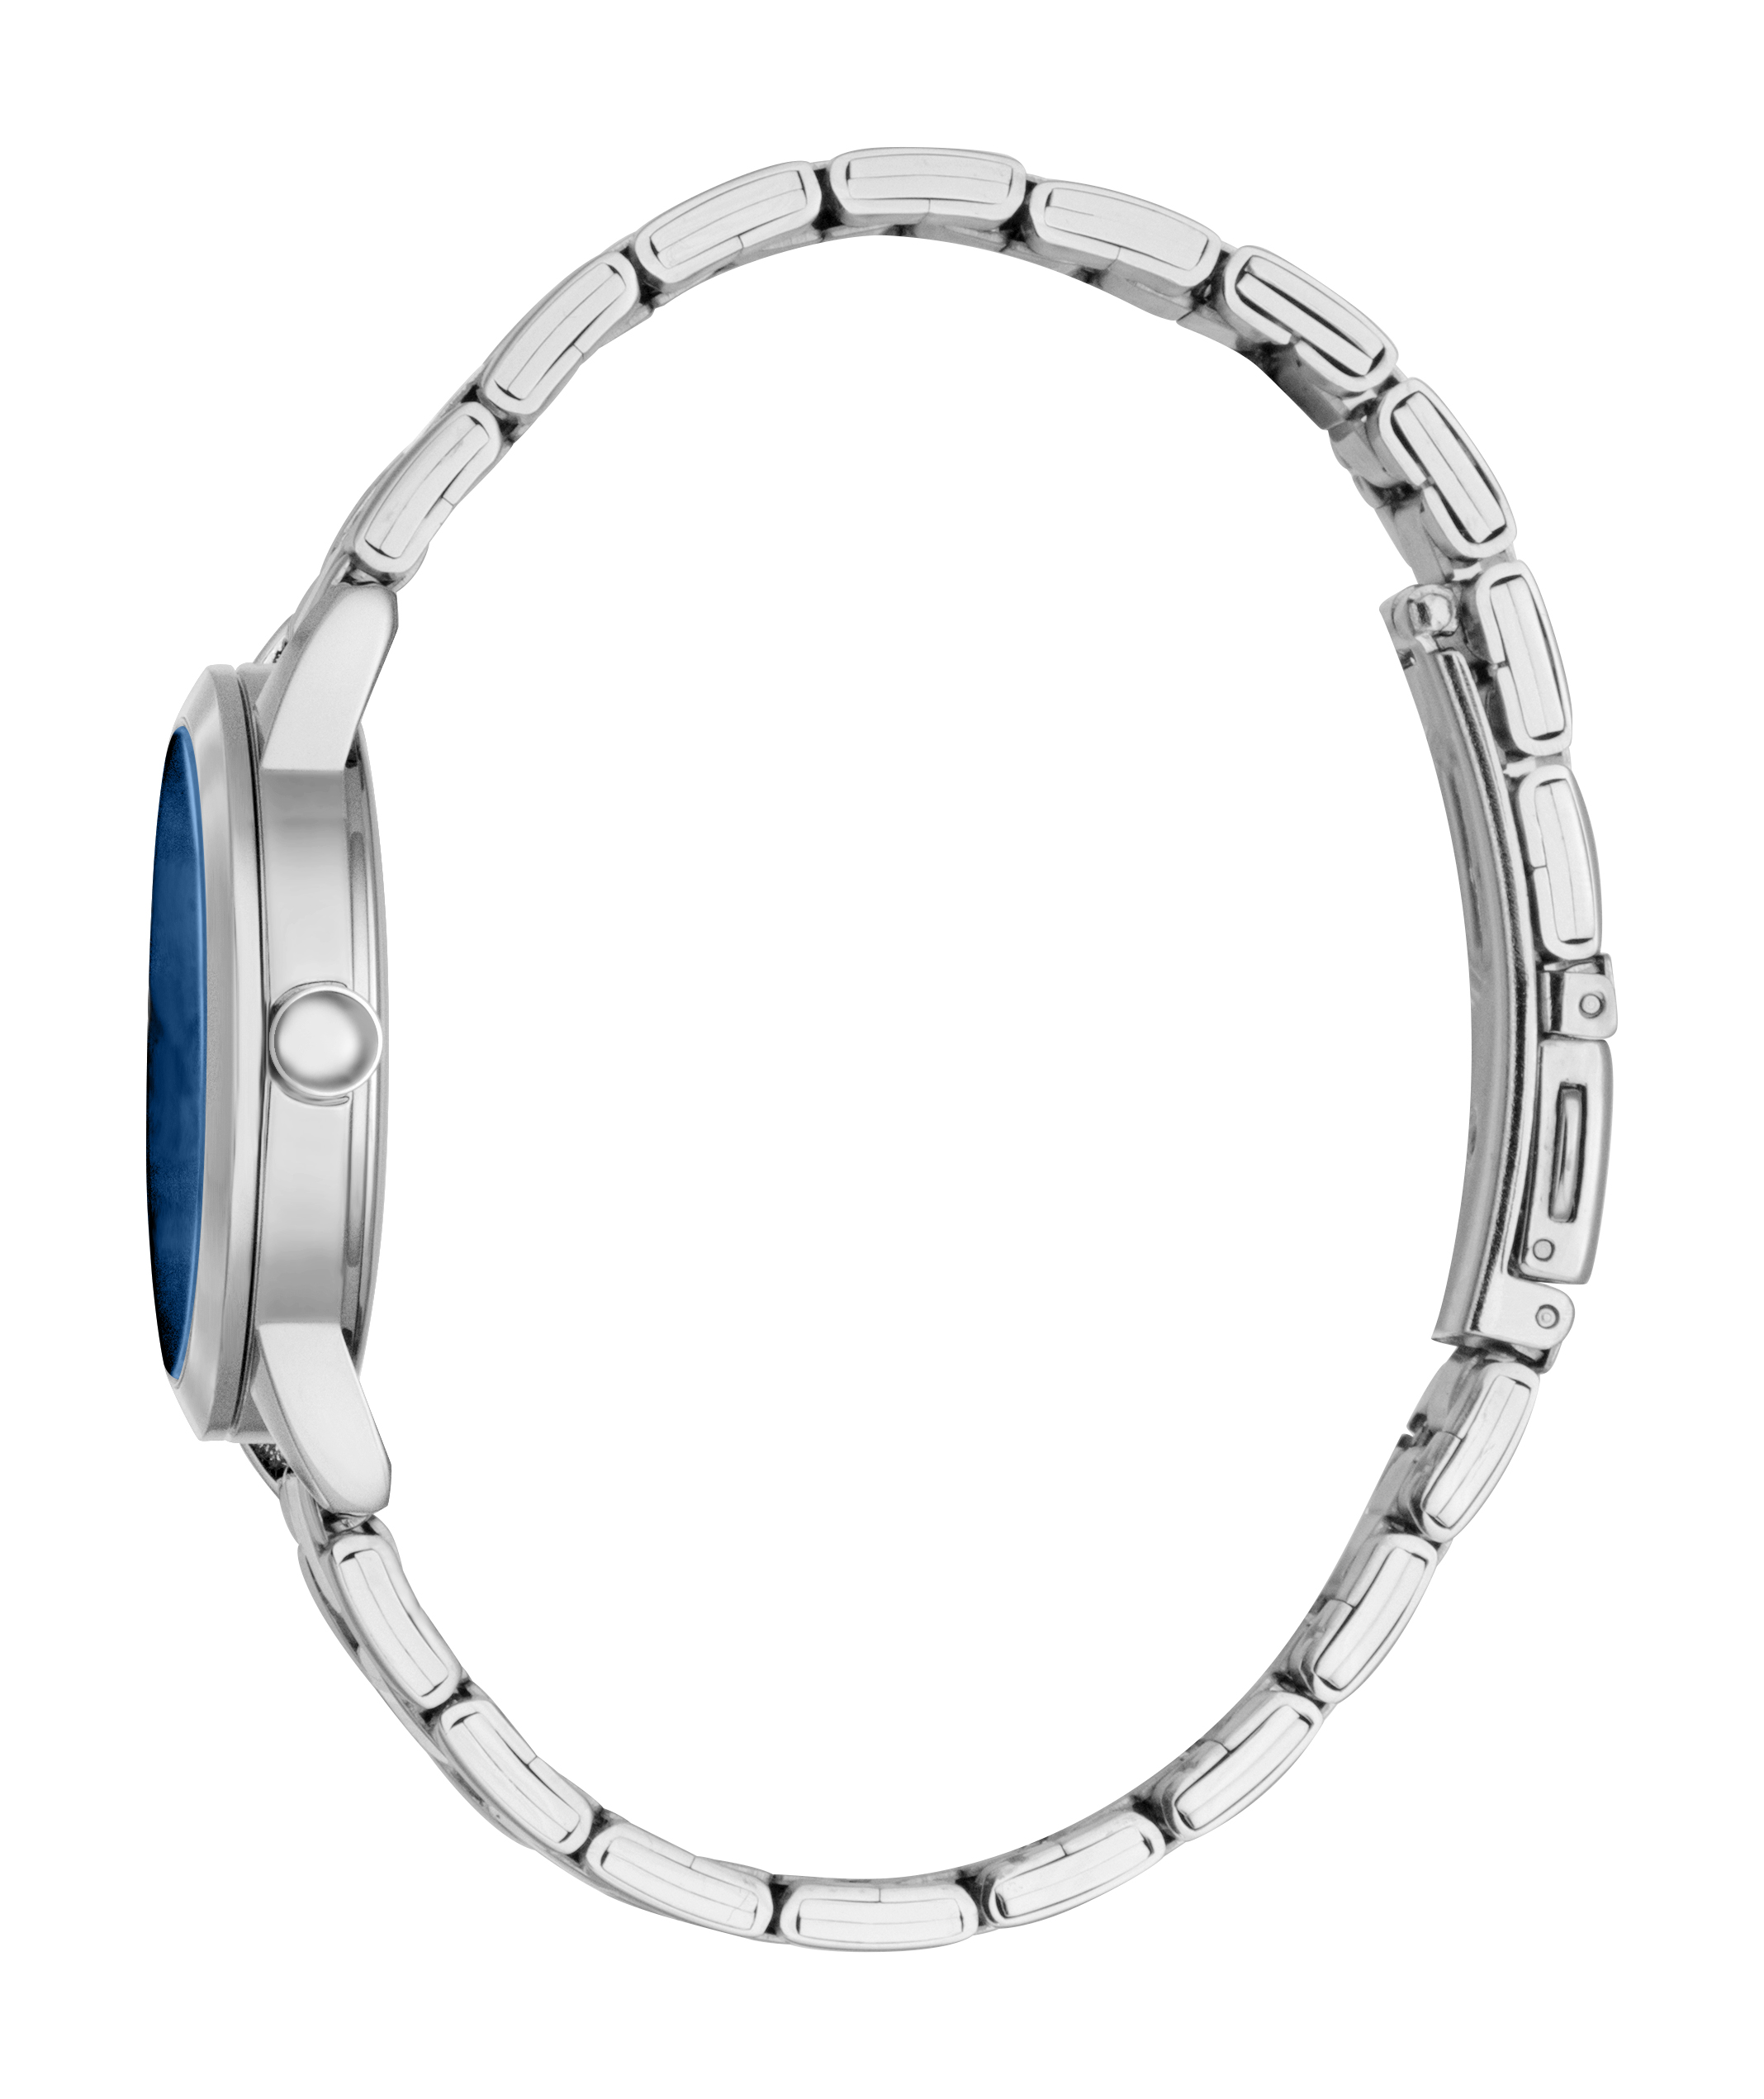 Унисекс часы ESPRIT Esprit ES1L362M0065